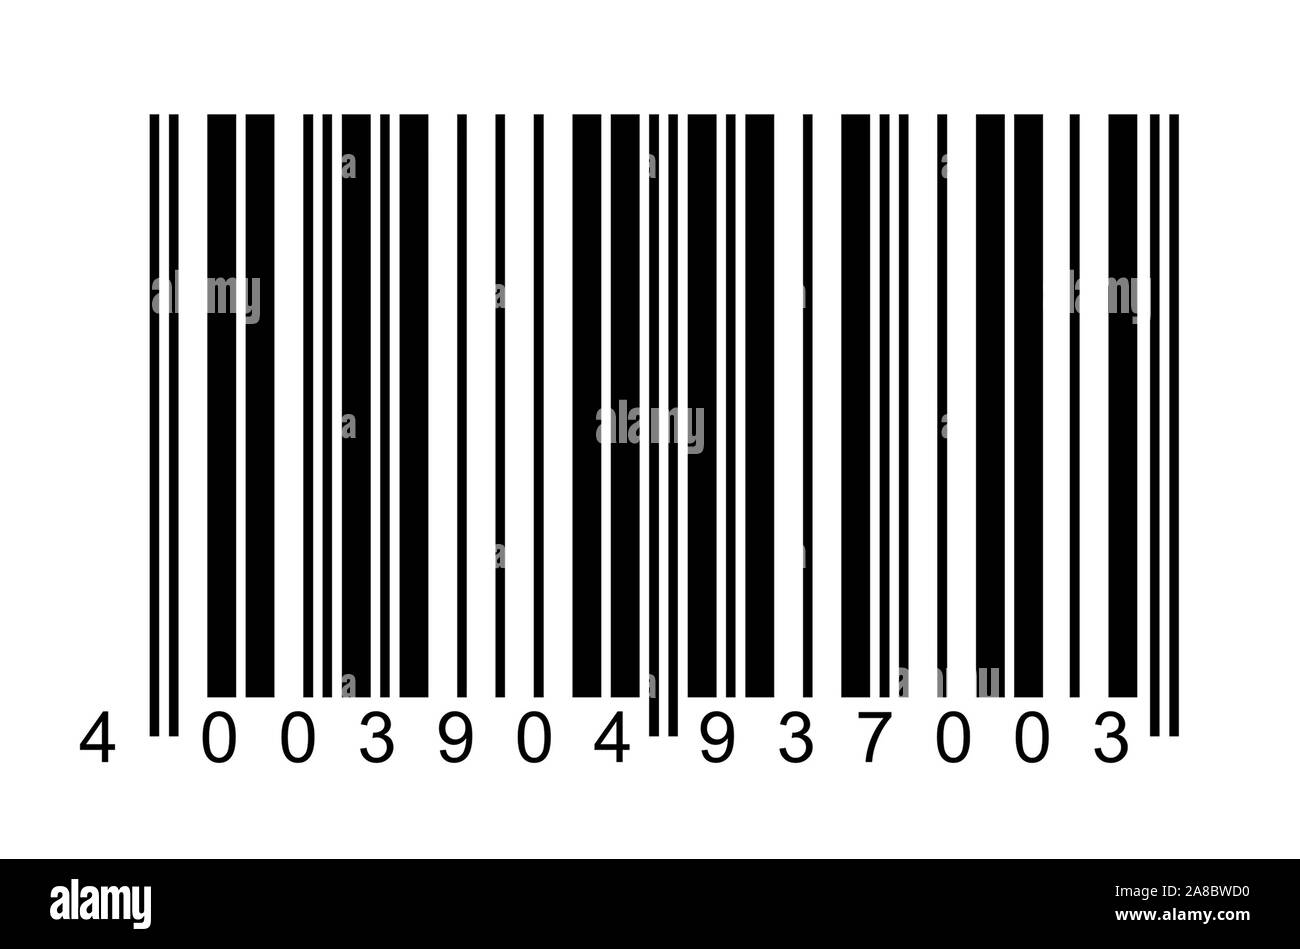 IAN; Europaeische Artikel Nummer, European Articel Number, Strichcode, Barcode, EU-Norm, Buchtitel Stock Photo